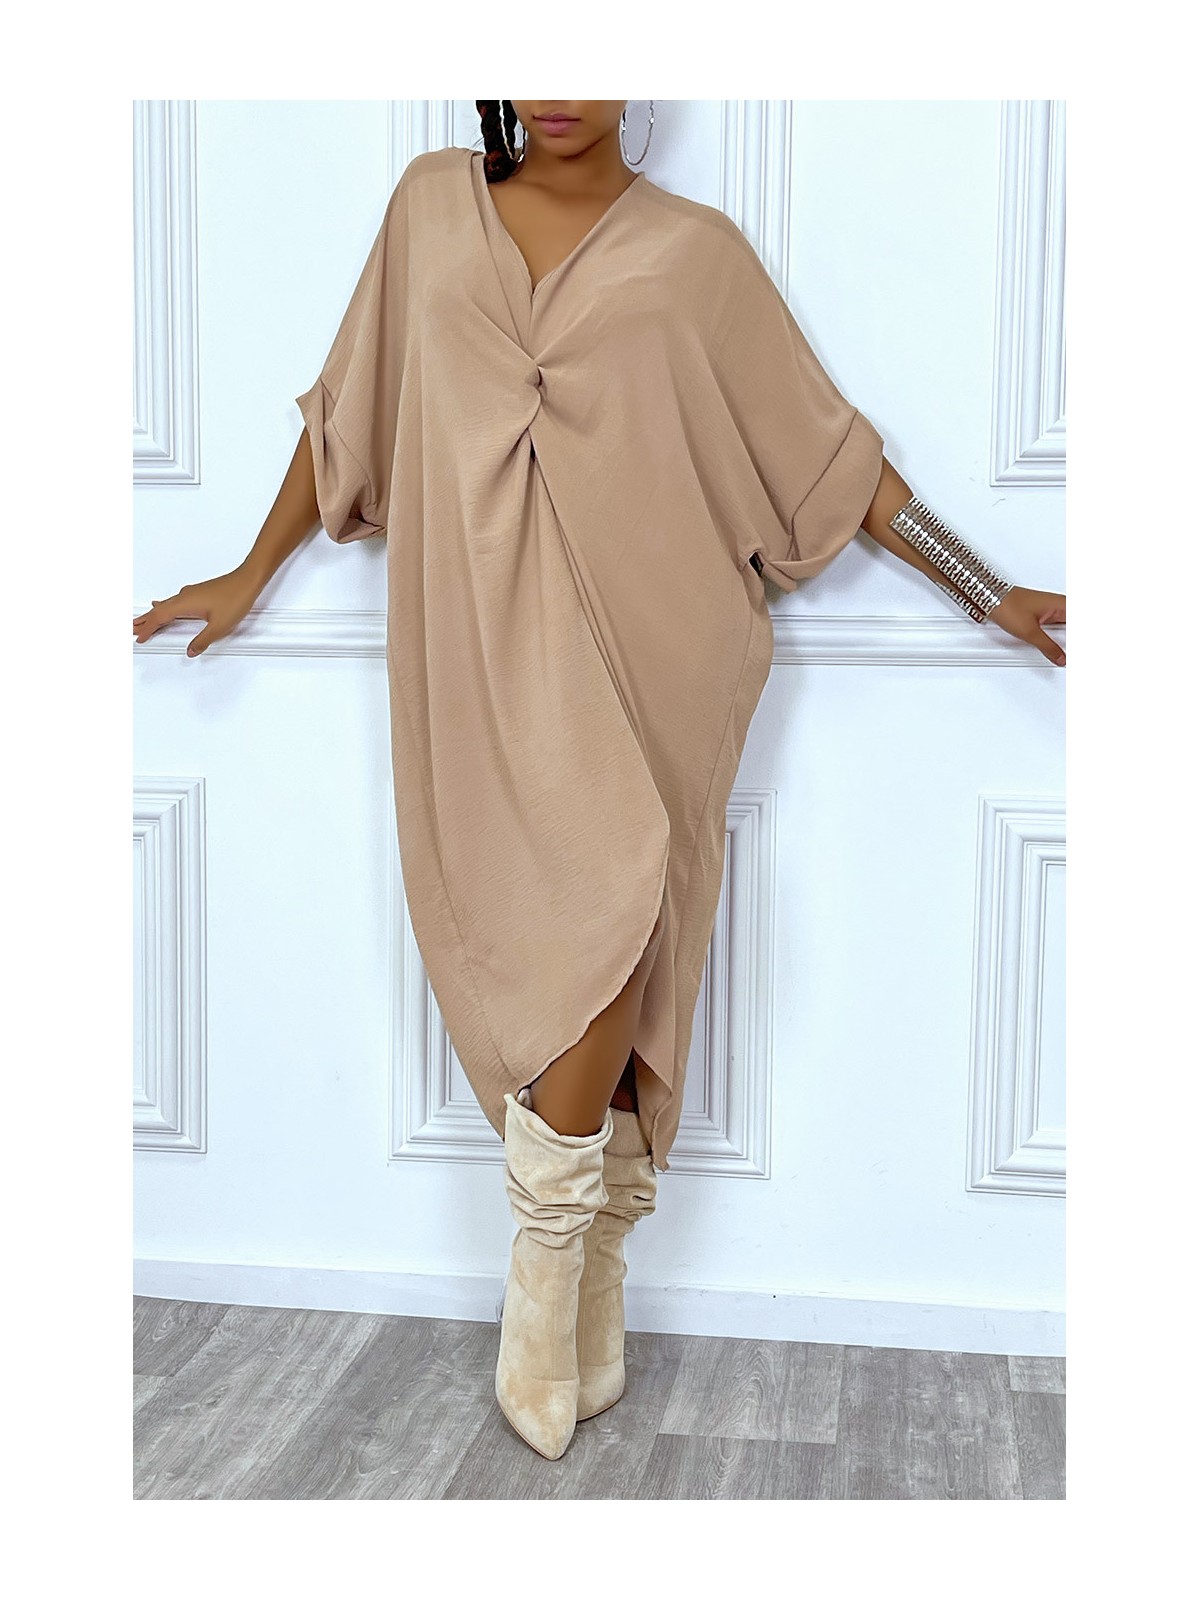 Robe tunique oversize camel col v détail froncé - 2